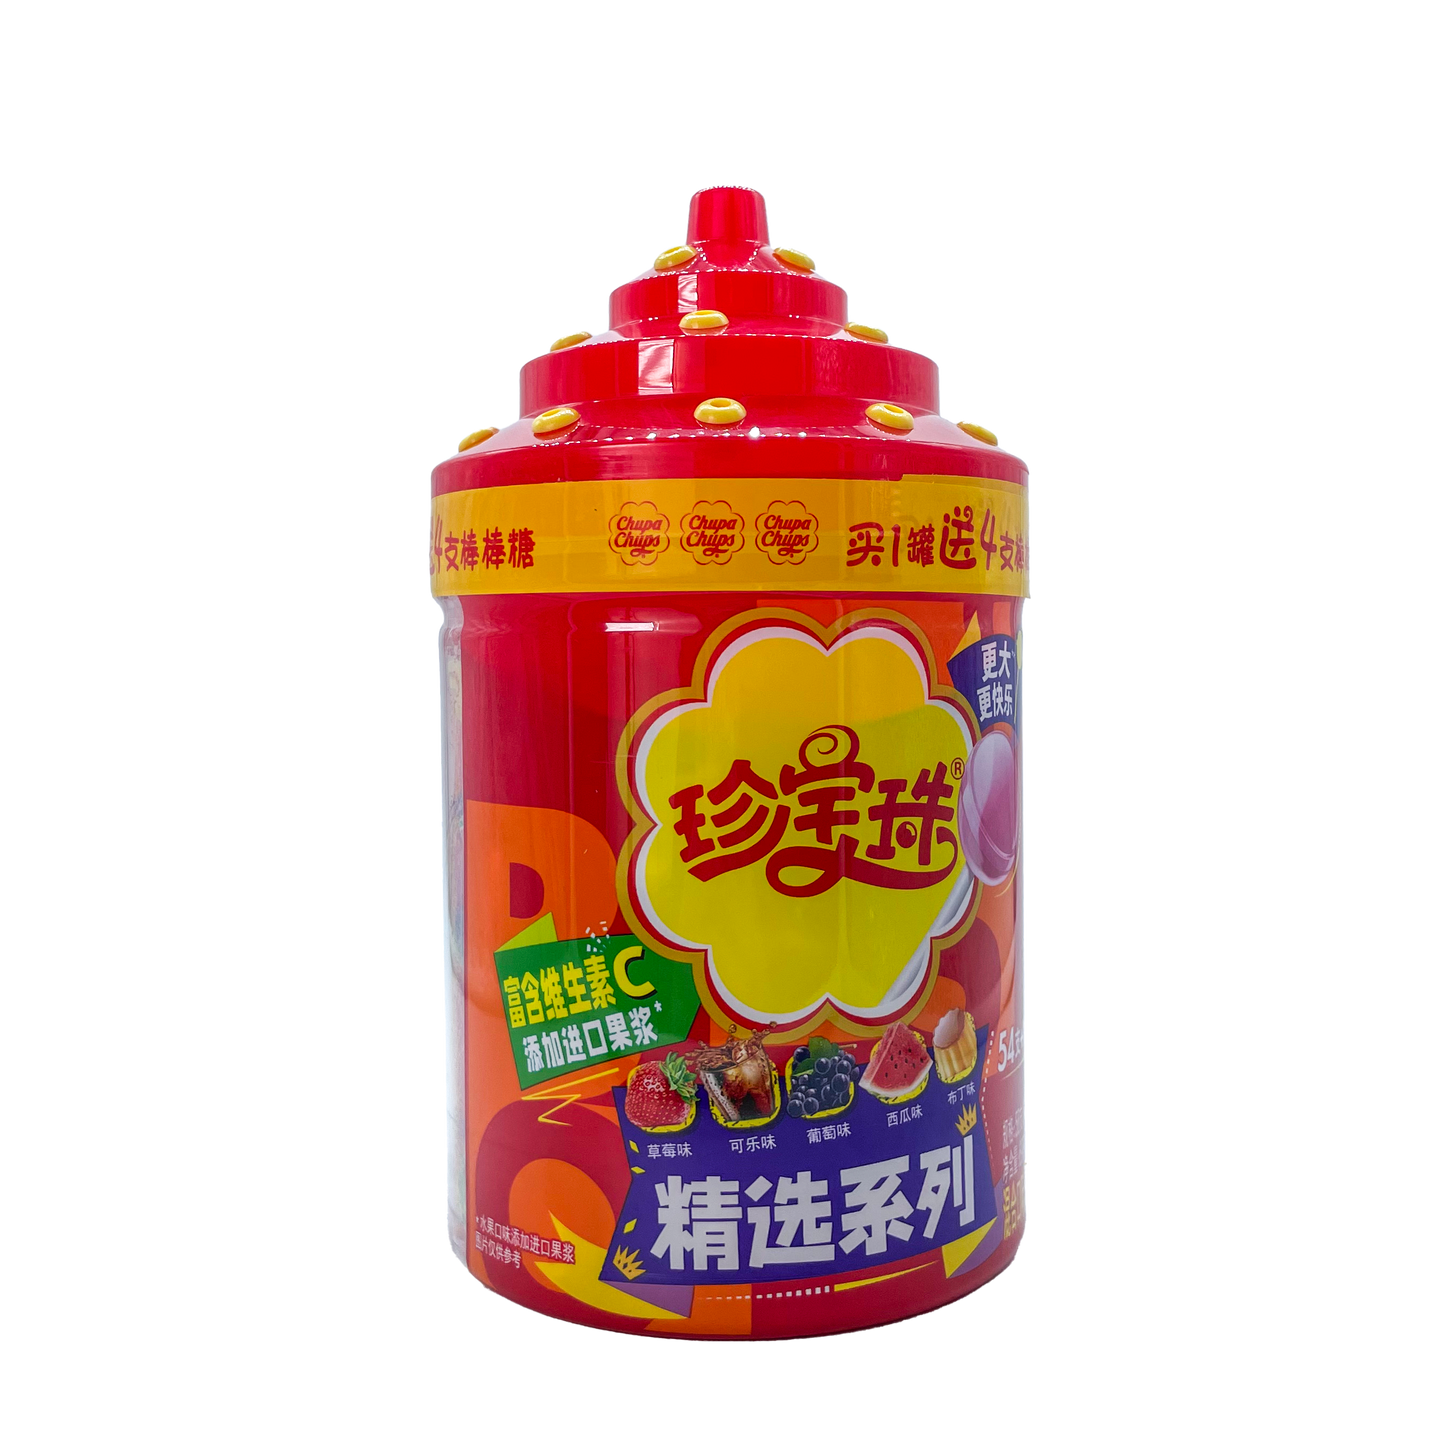 Chupa Chups - Assorted Flavor Lollipop 58pk Display